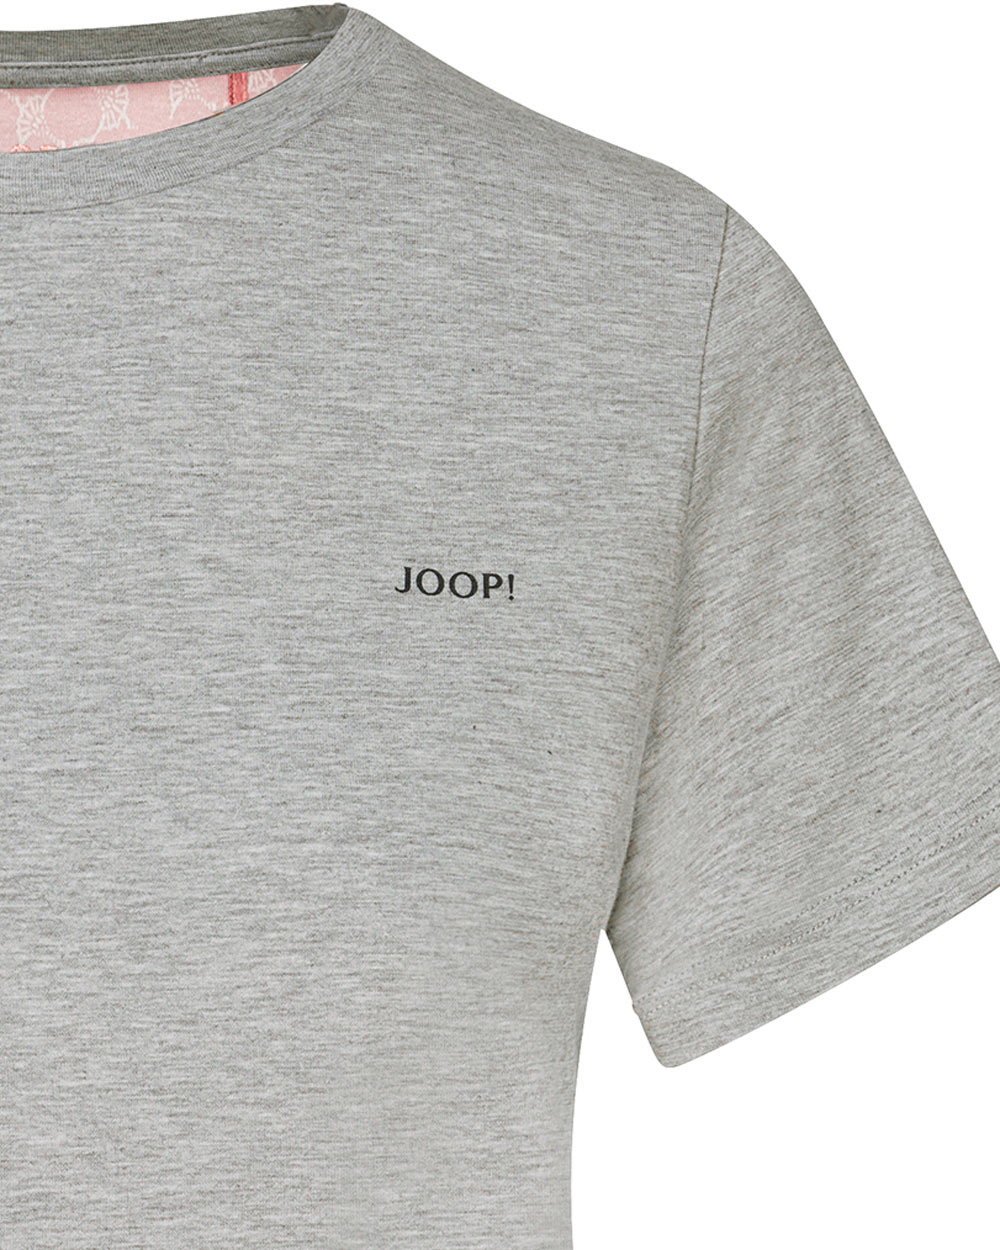 Joop! T-Shirt Easy Leisure Grau - Ausschnitt